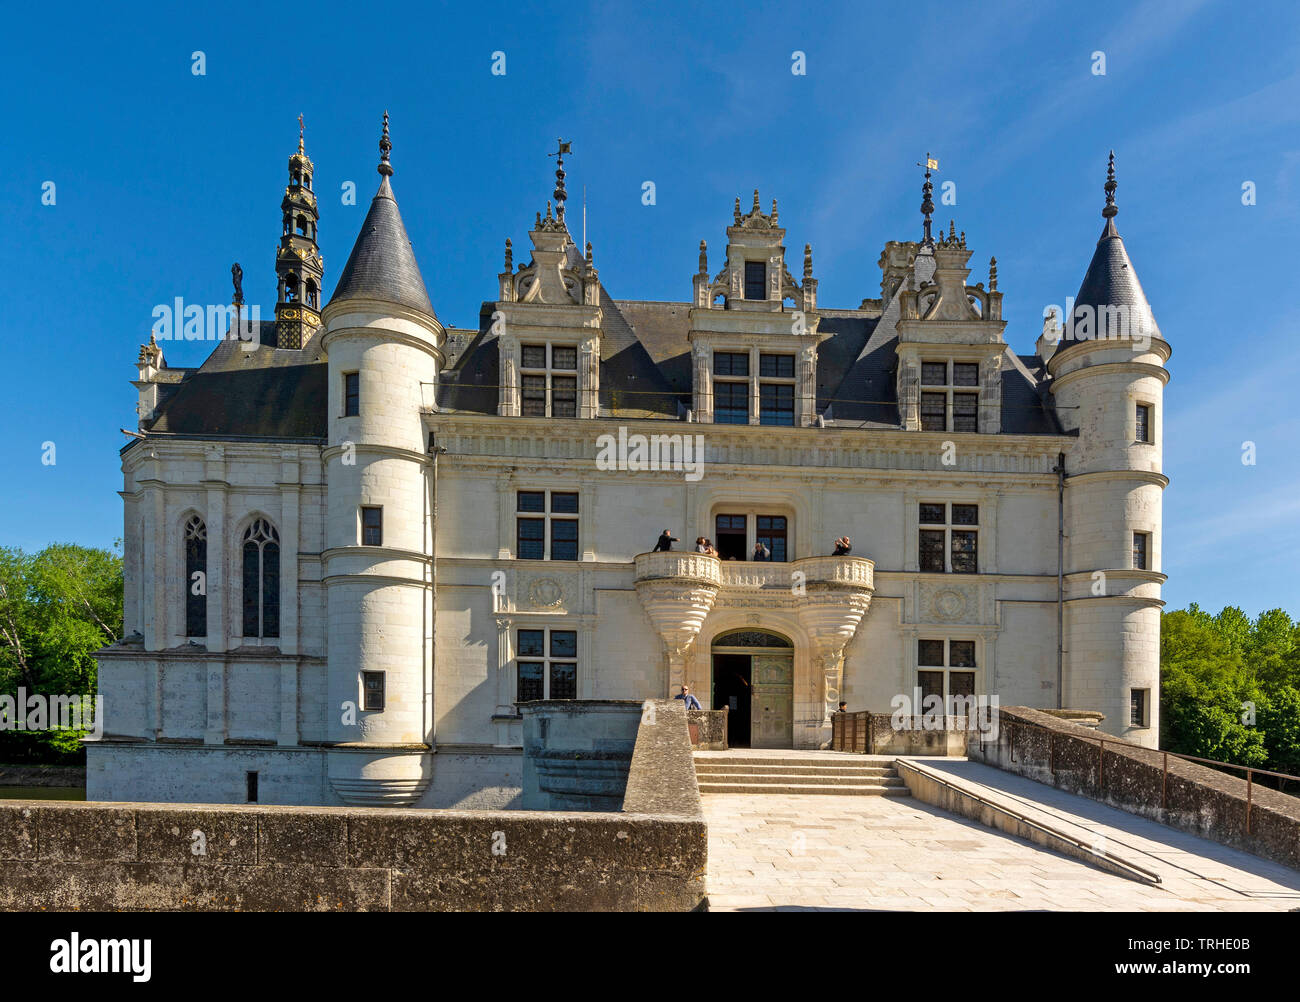 Chenonceau castle spanning the River Cher, Loire Valley, Indre et loire department, Centre-Val de Loire, France Stock Photo